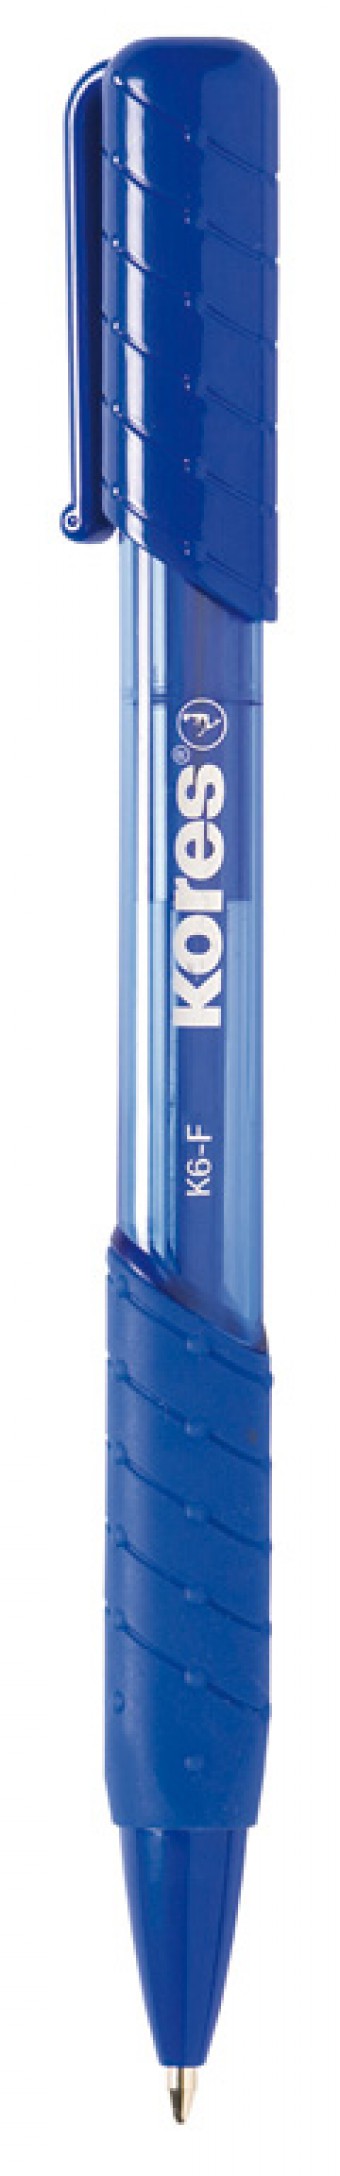 K6-F_blue